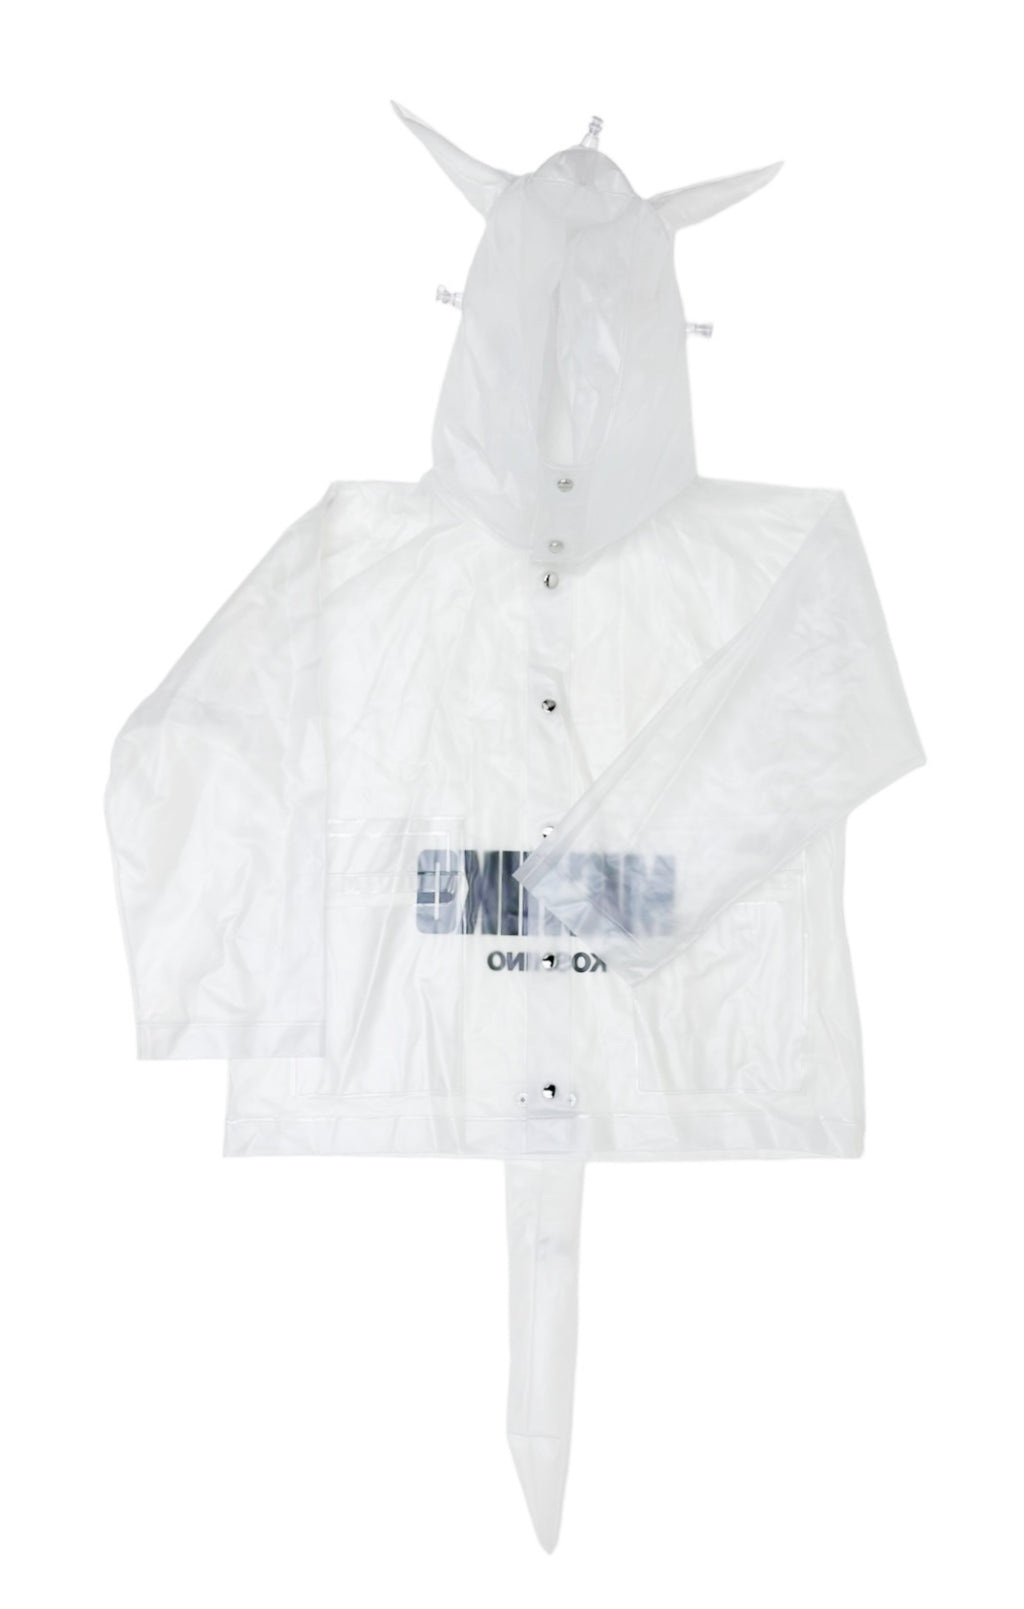 MICHIKO KOSHINO (RARE) Jacket Size: No size tags, fits like Youth L